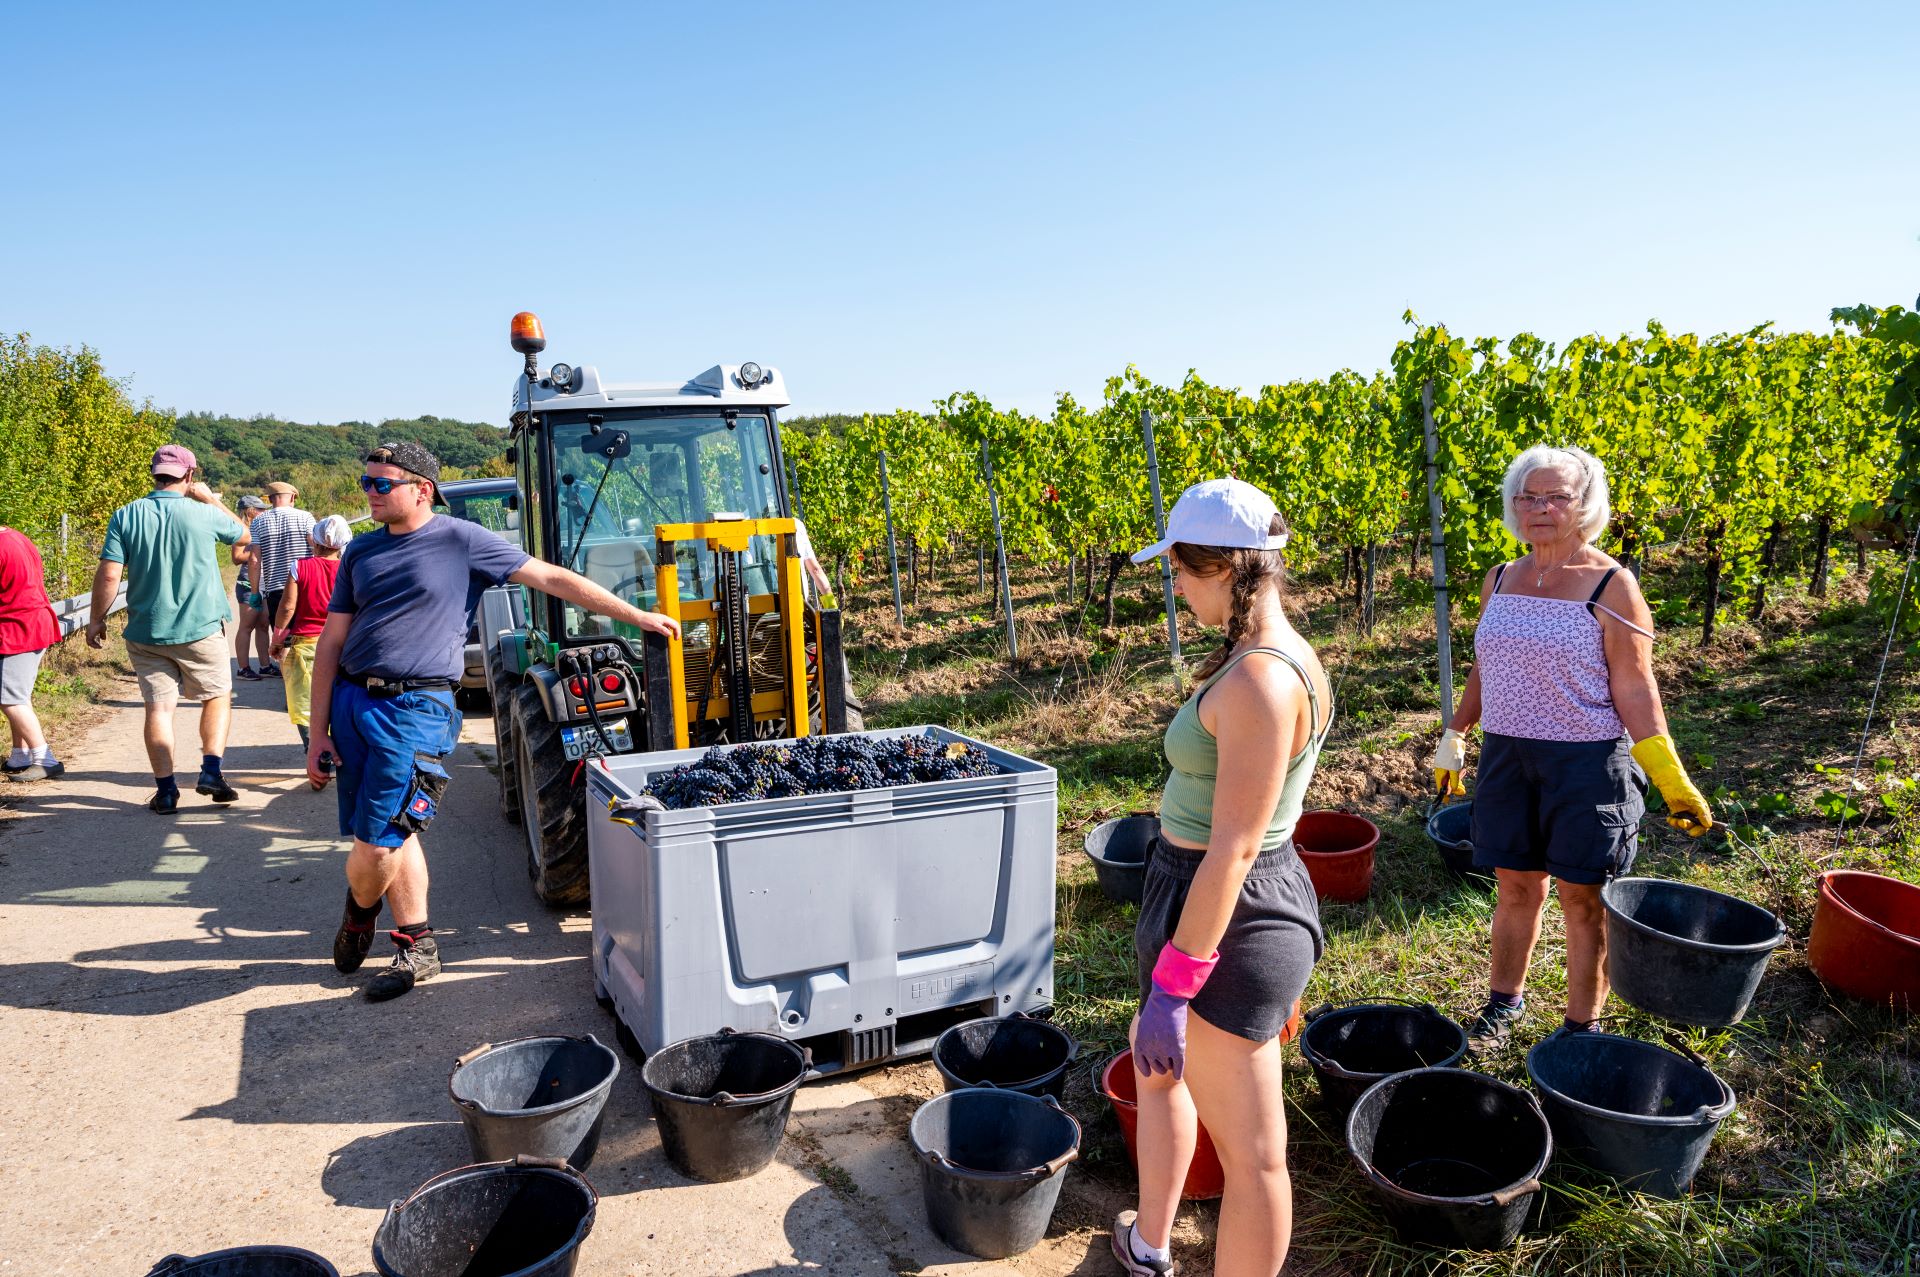 Les travailleurs de la vigne sont représentés au travail. Un homme s'appuie sur un véhicule tenant des raisins dans un grand récipient, tandis que des femmes avec des seaux se tiennent au premier plan.